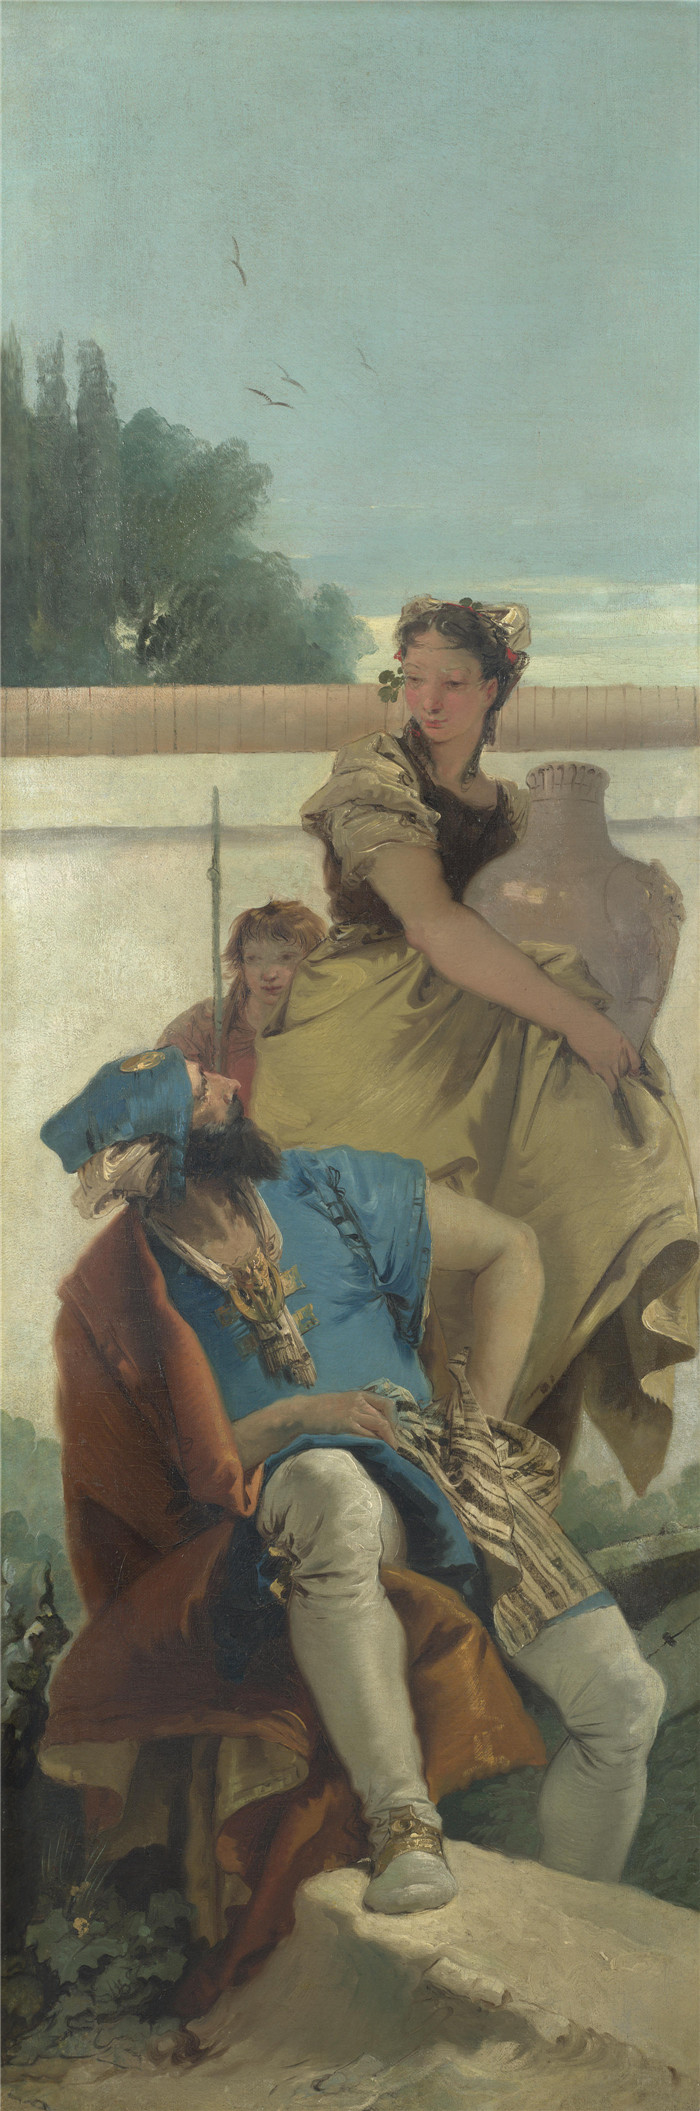 乔瓦尼·巴蒂斯塔·提埃波罗,Giovanni Battista Tiepolo - Seated Man, Woman with Jar, and Boy高清作品